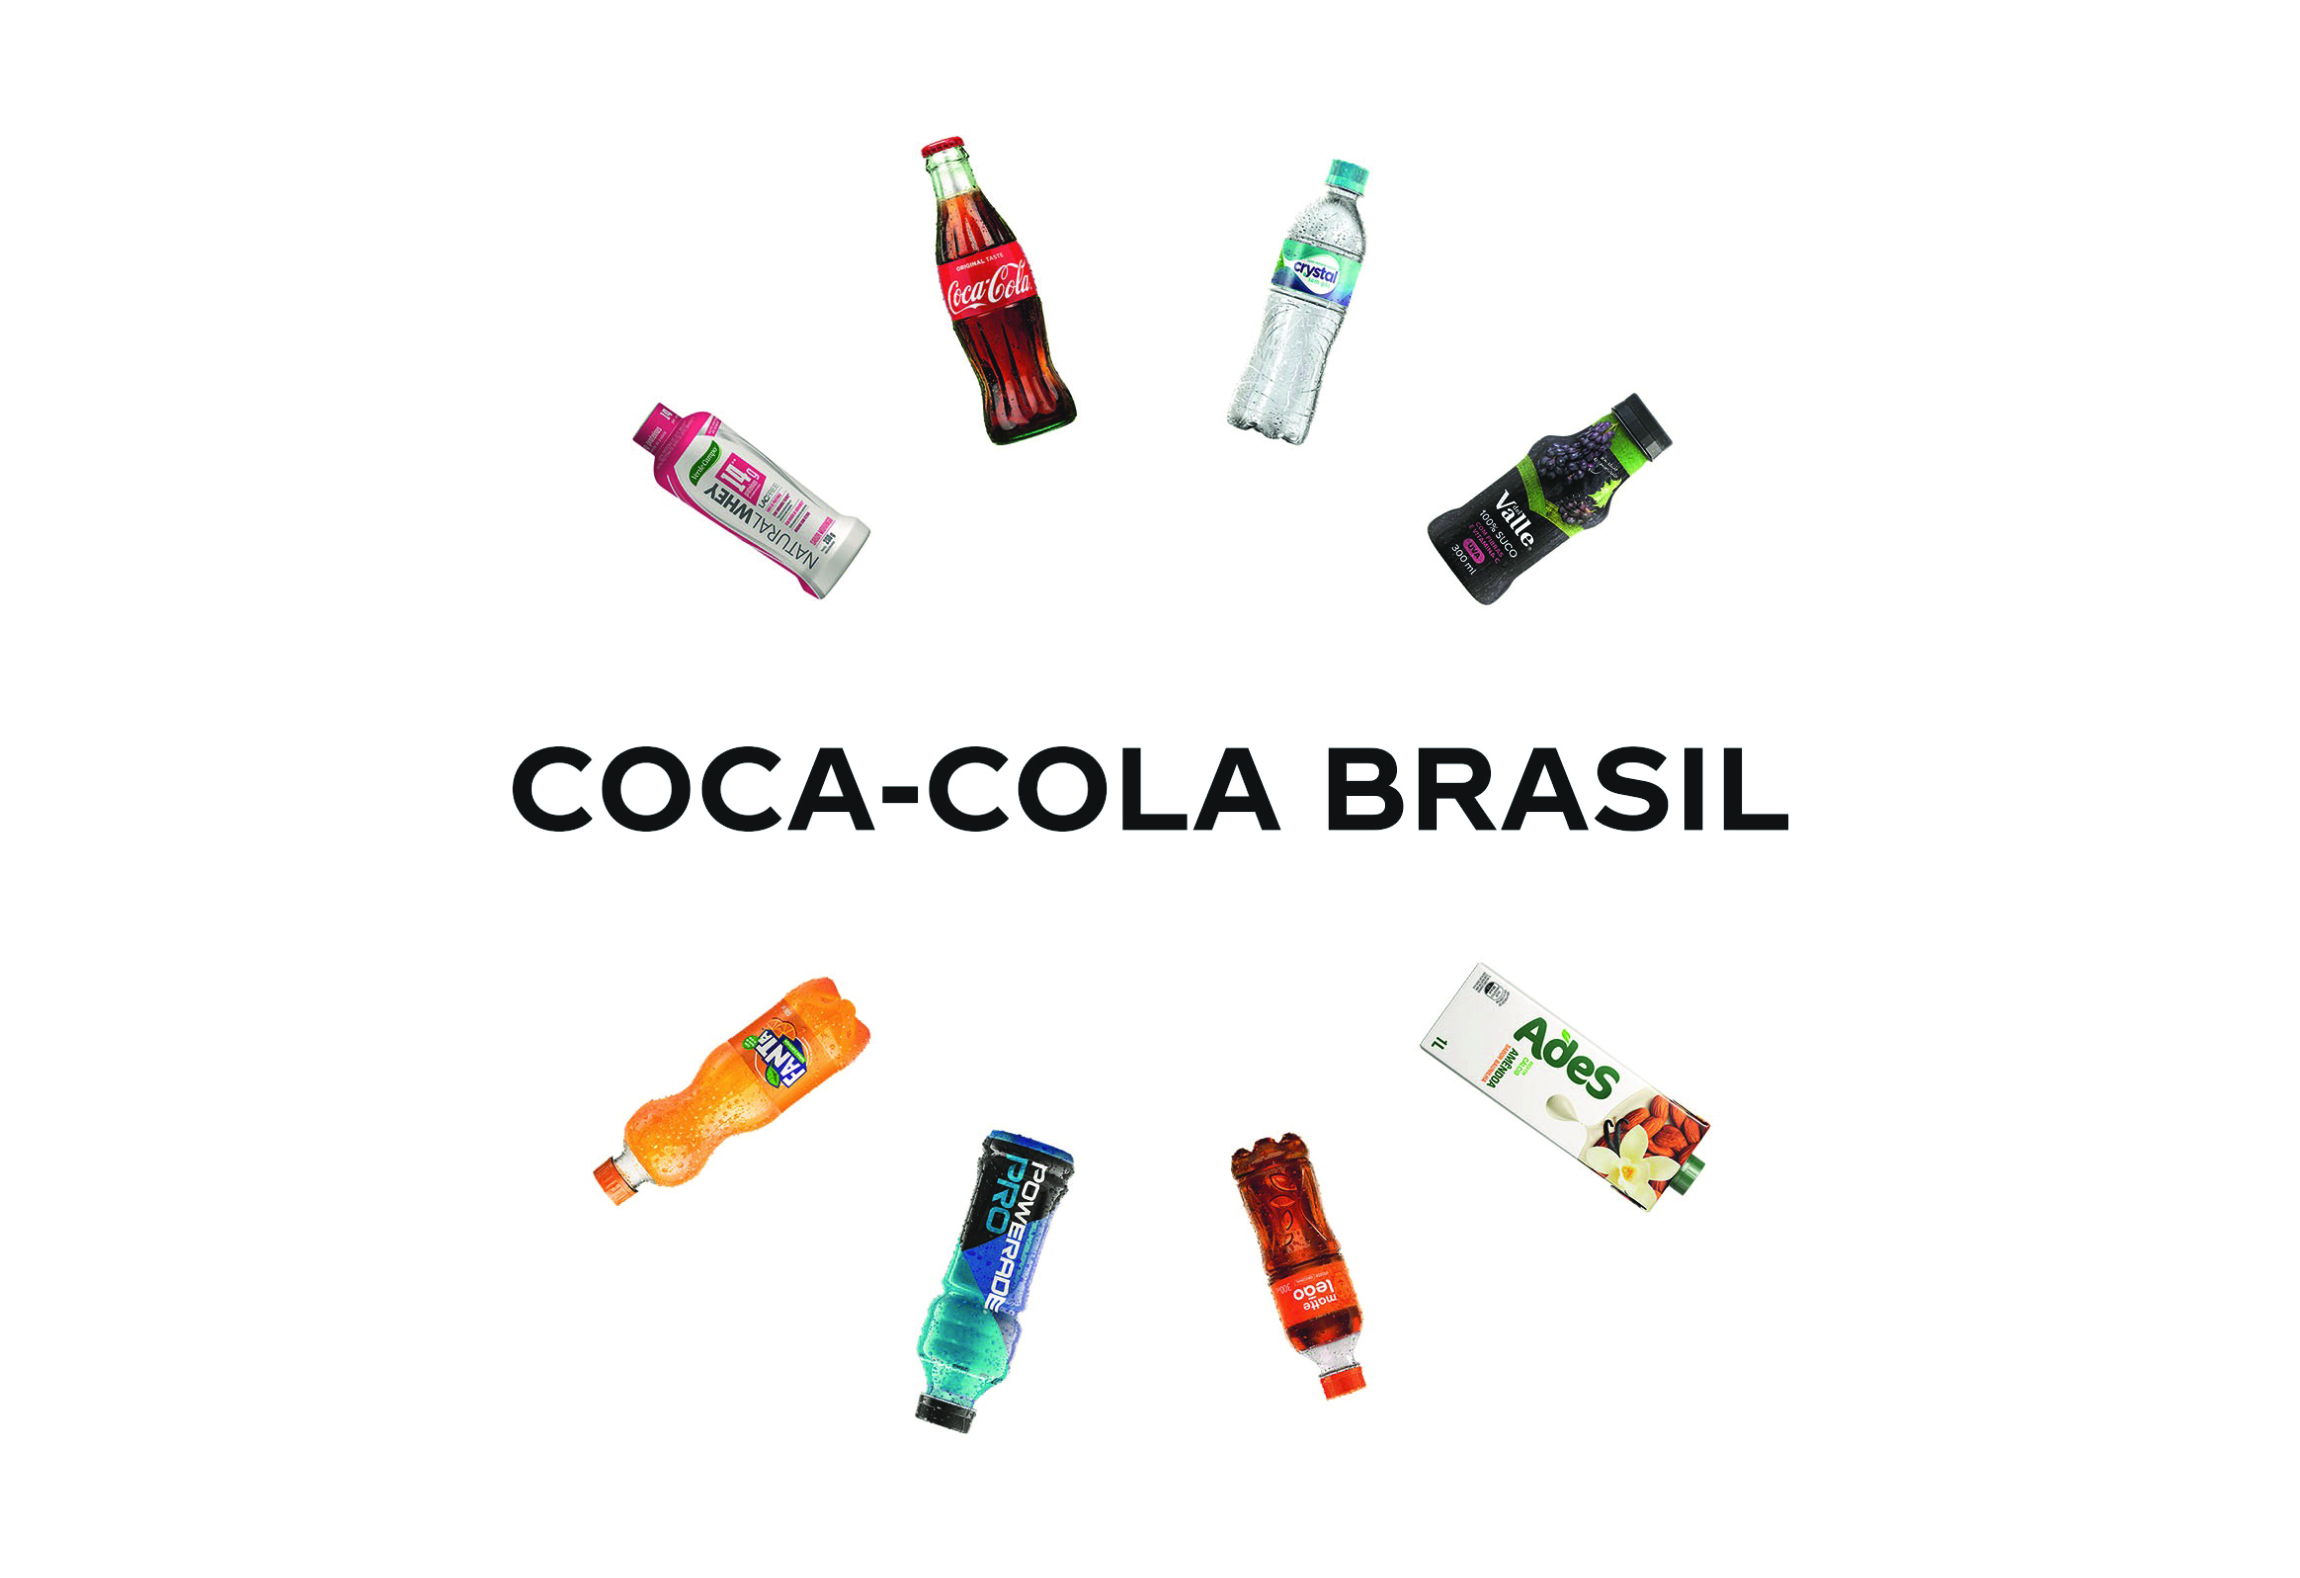 História Sorocaba Refrescos Coca-Cola